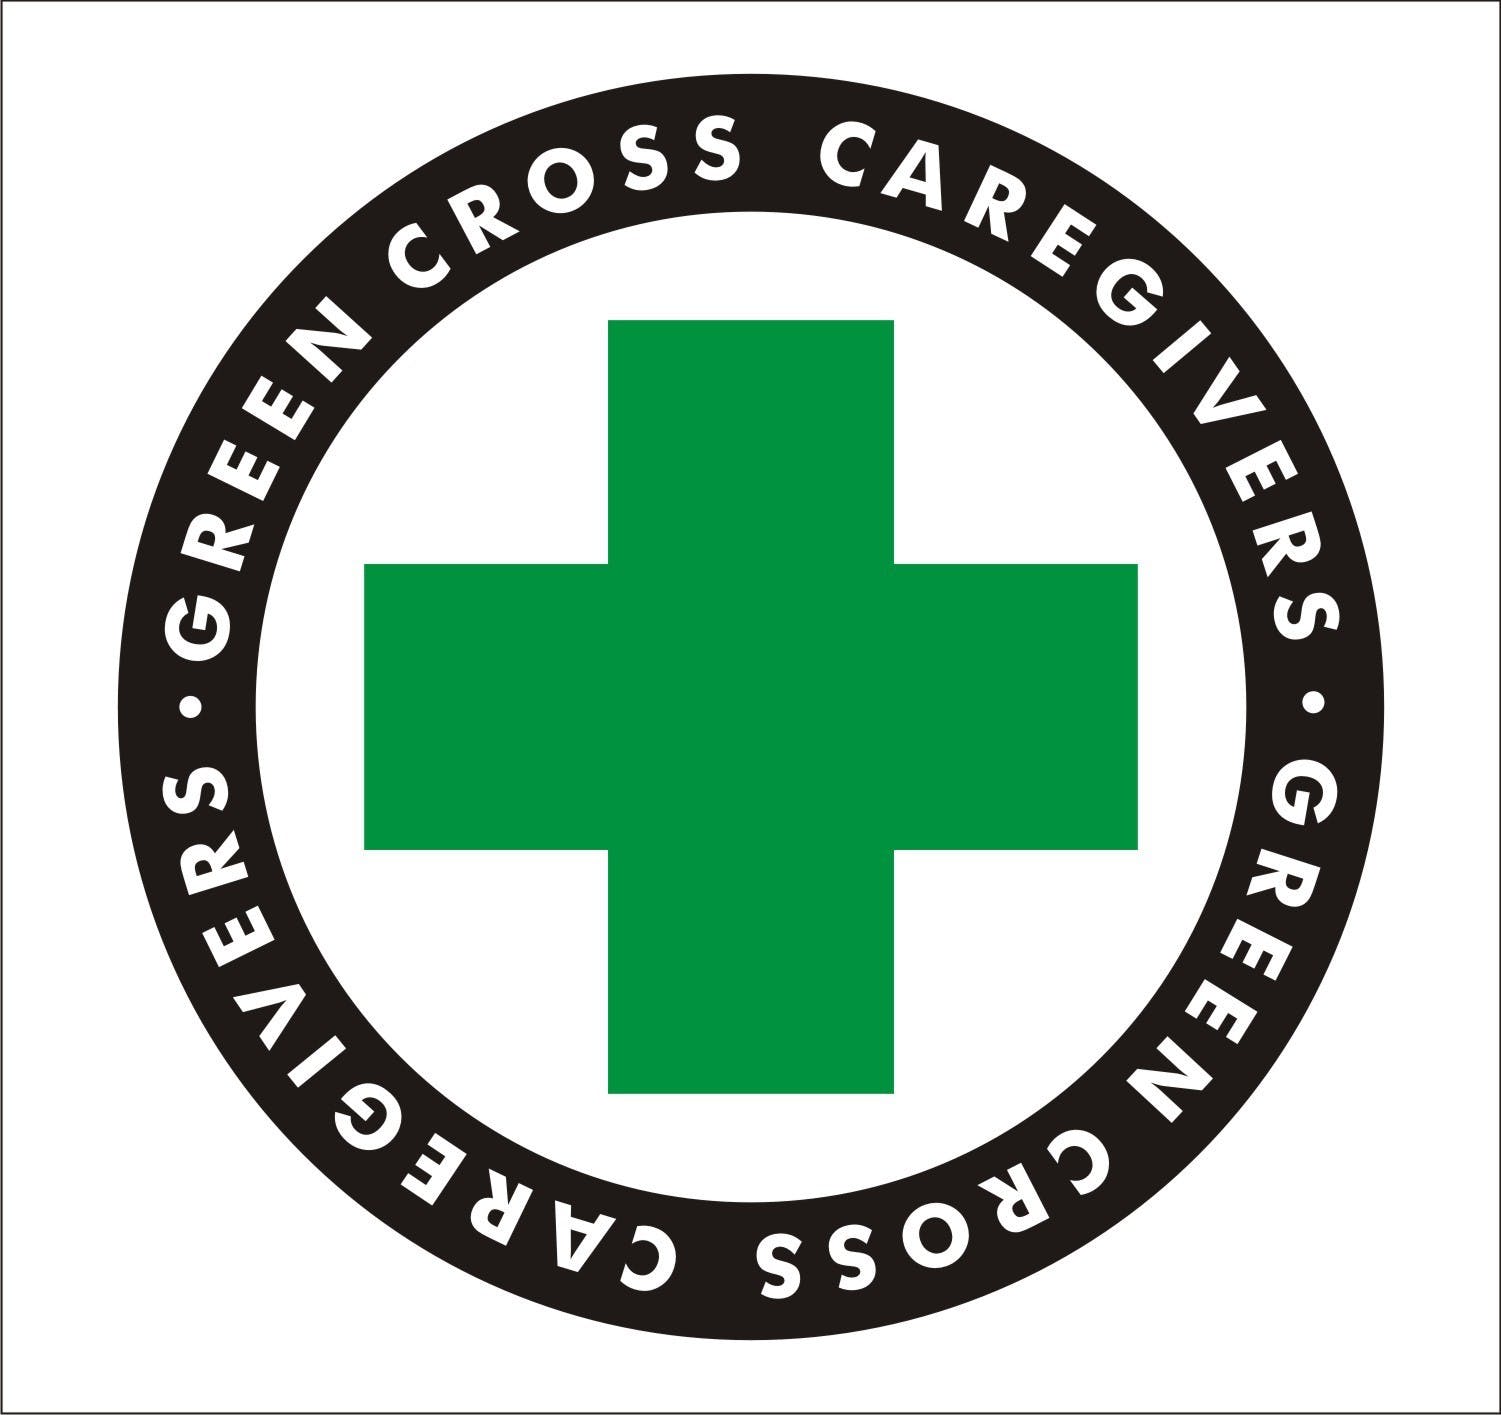 Green Cross Caregivers - Medical Marijuana Doctors - Cannabizme.com